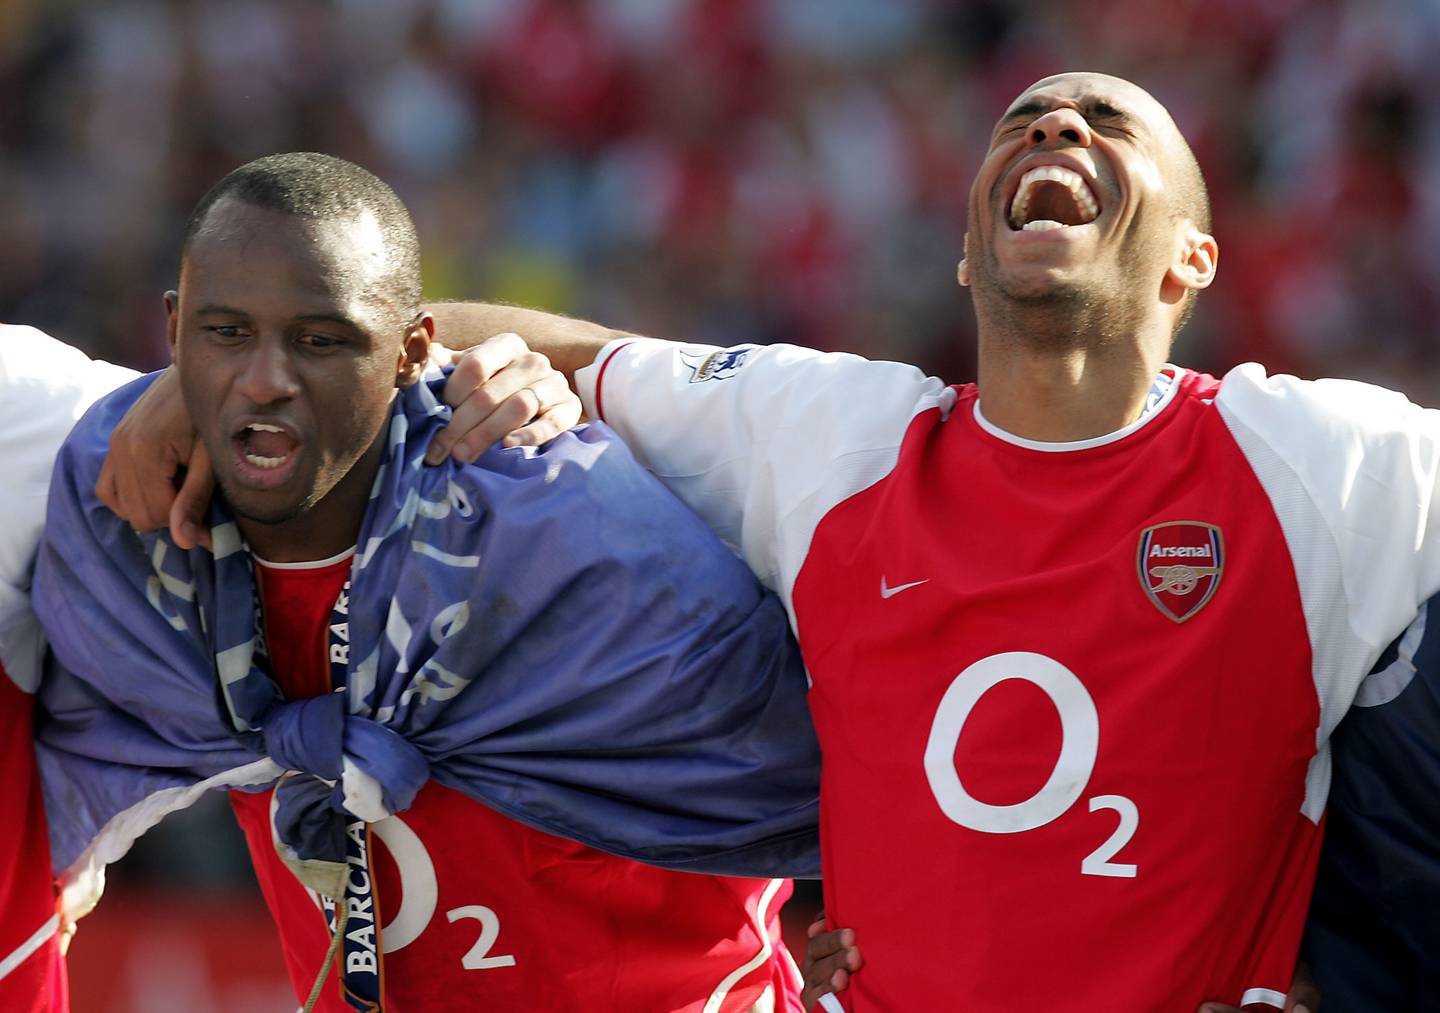 Daniel Ek skal ha fått med de tidligere Arsenal-spillerne Patrick Vieira og Thierry Henry i kampen for oppkjøp av klubben.